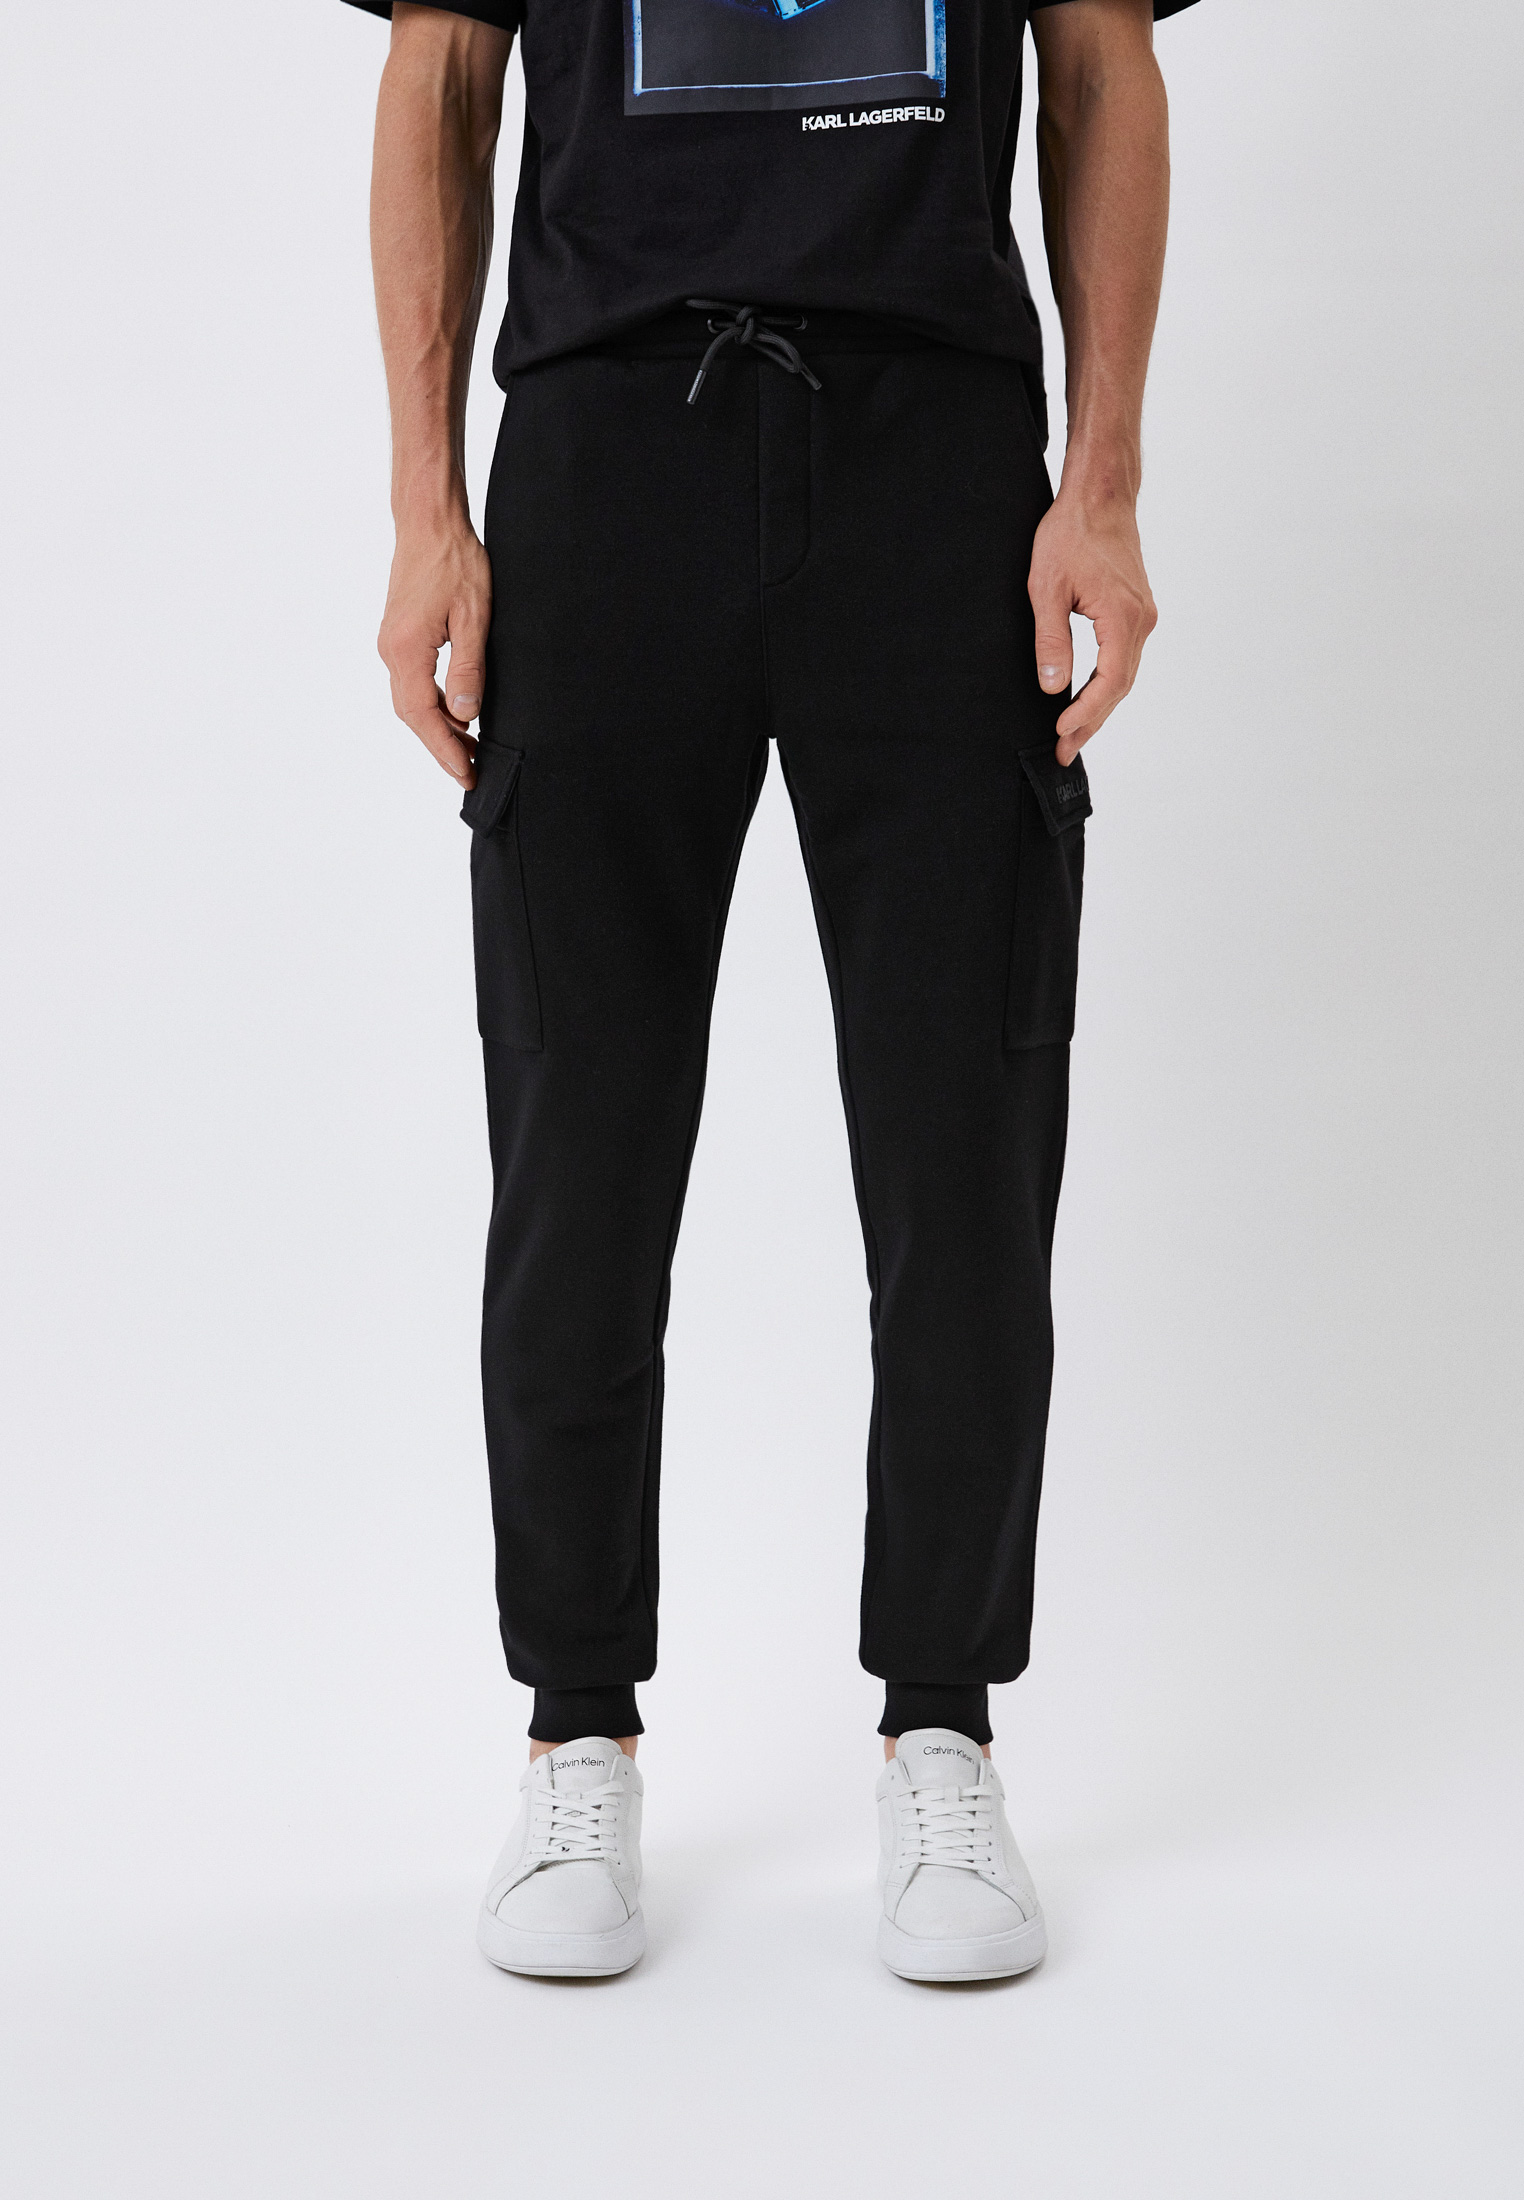 Мужские спортивные брюки Karl Lagerfeld (Карл Лагерфельд) 705087-523910: изображение 1